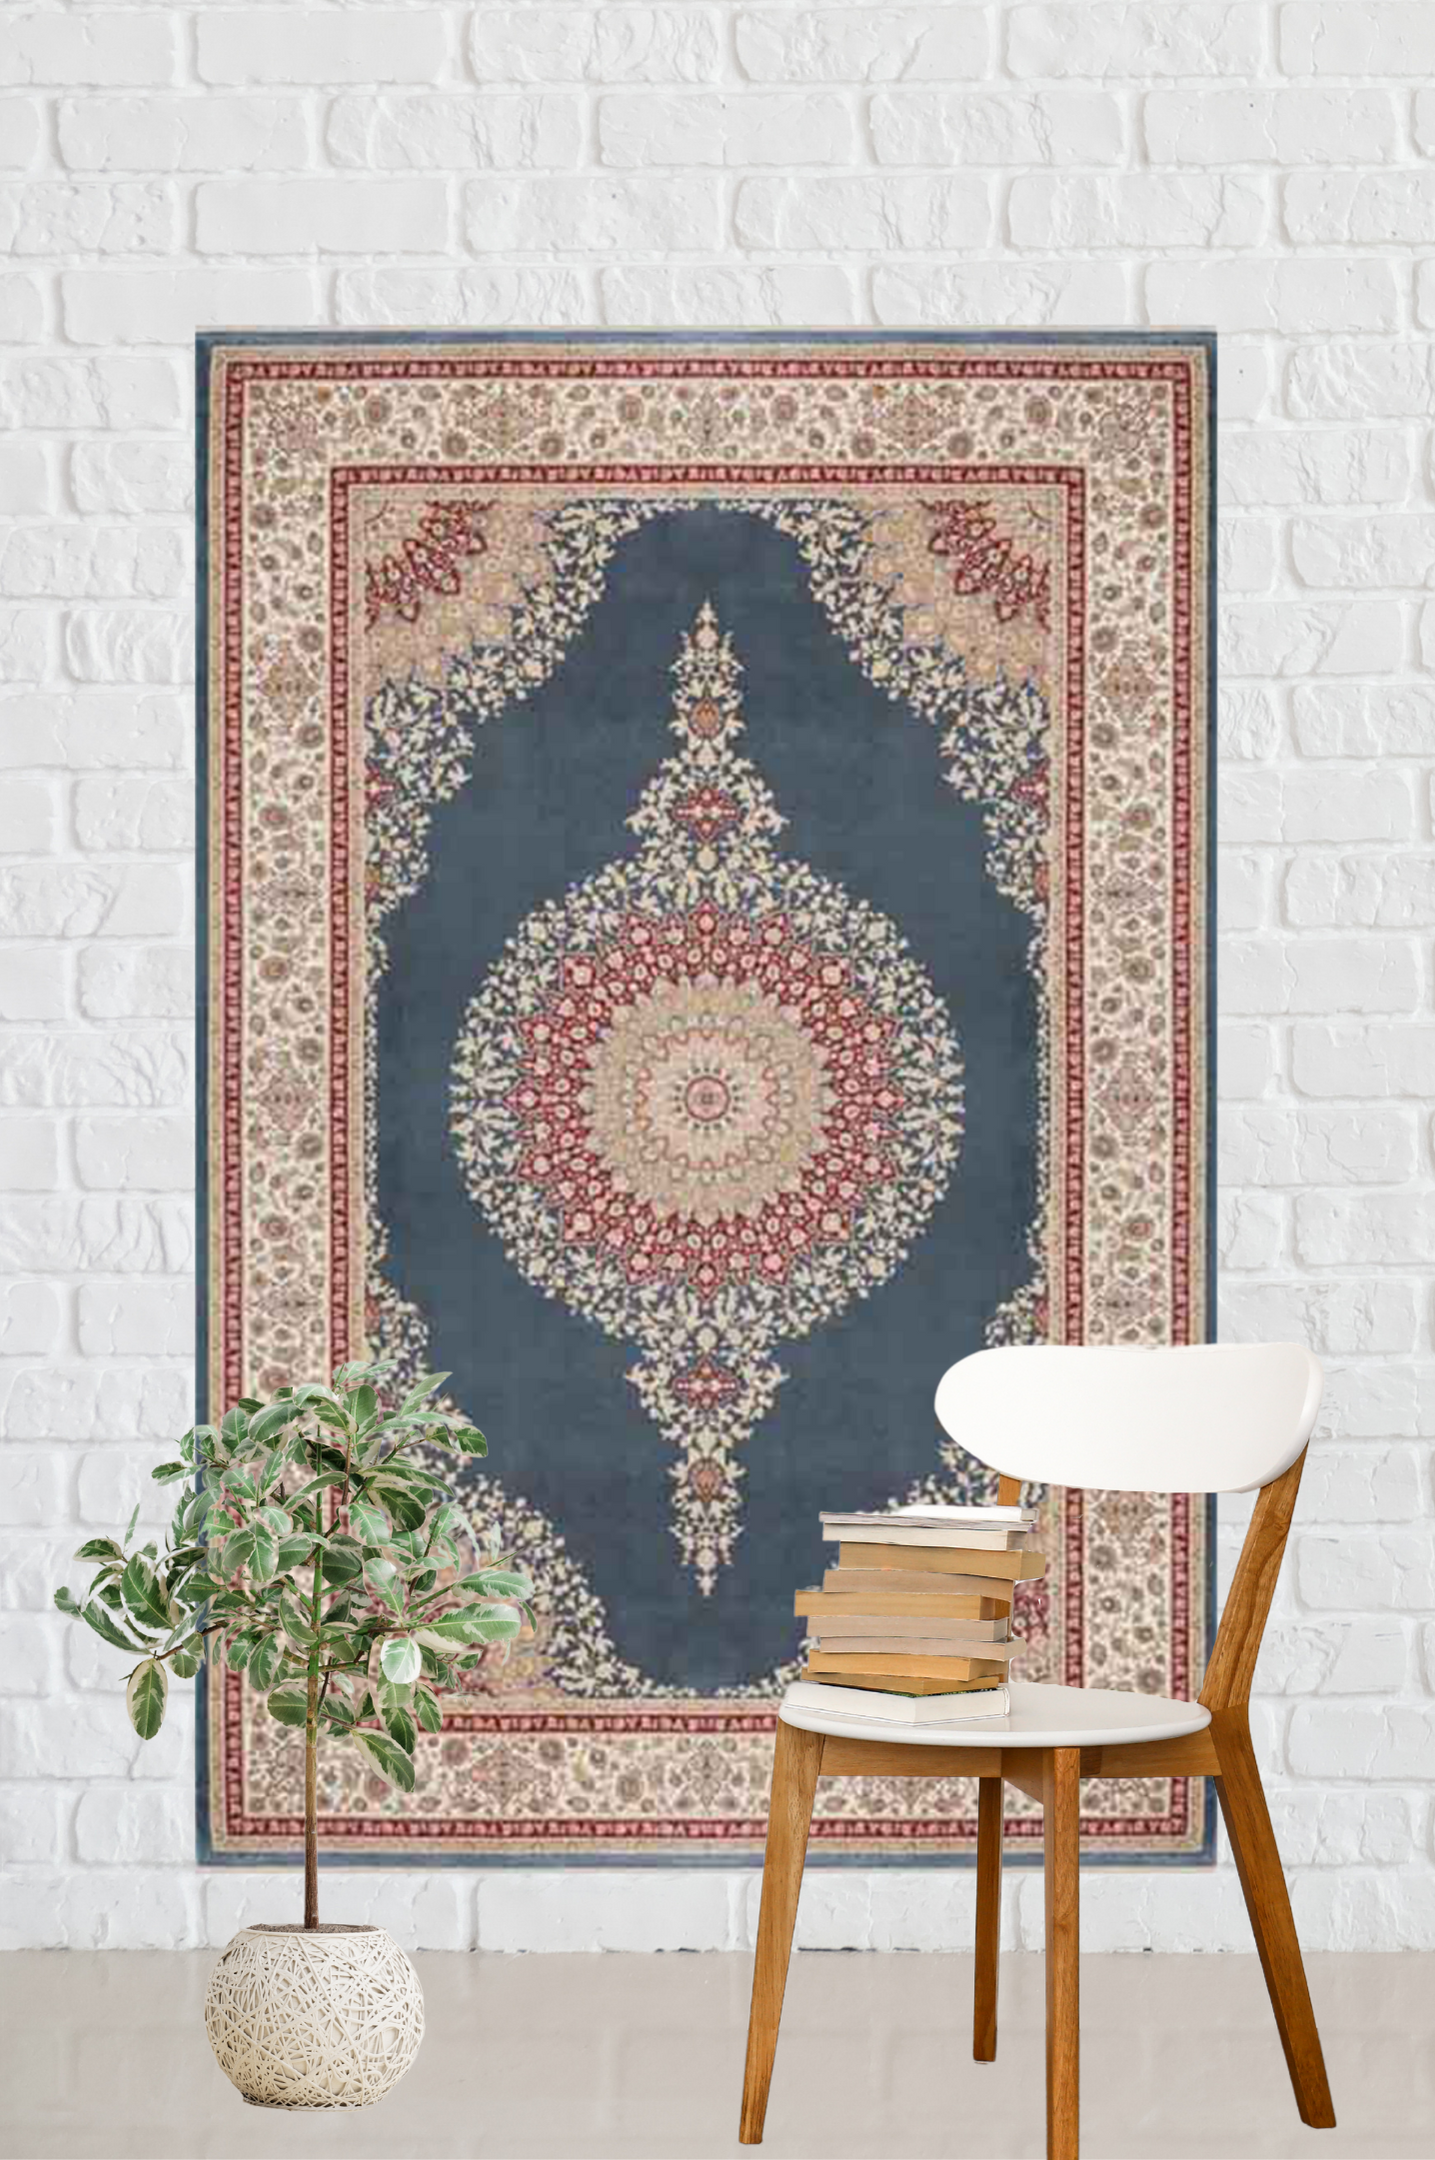 Classic Silk Carpet 379A